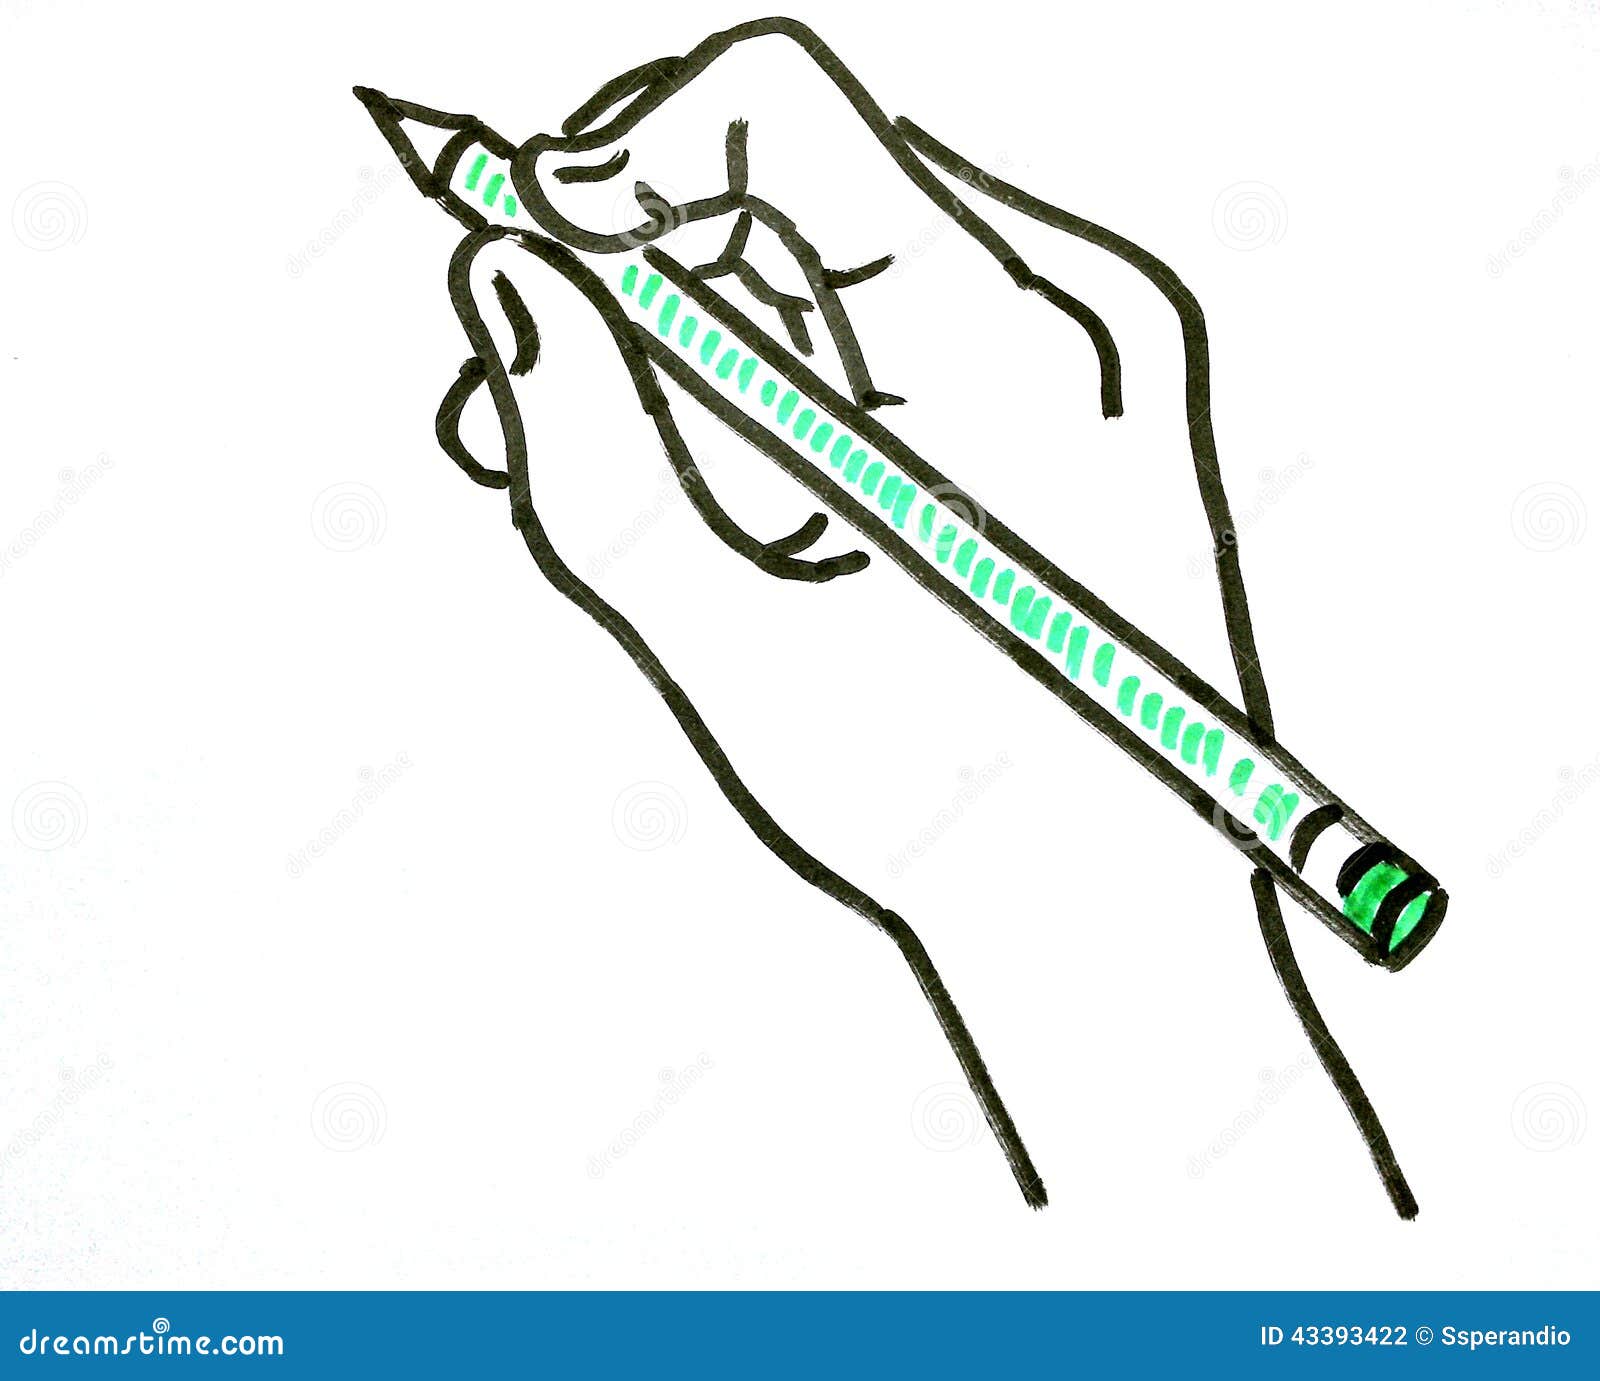 remettez le dessin d une main avec un crayon vert 43393422